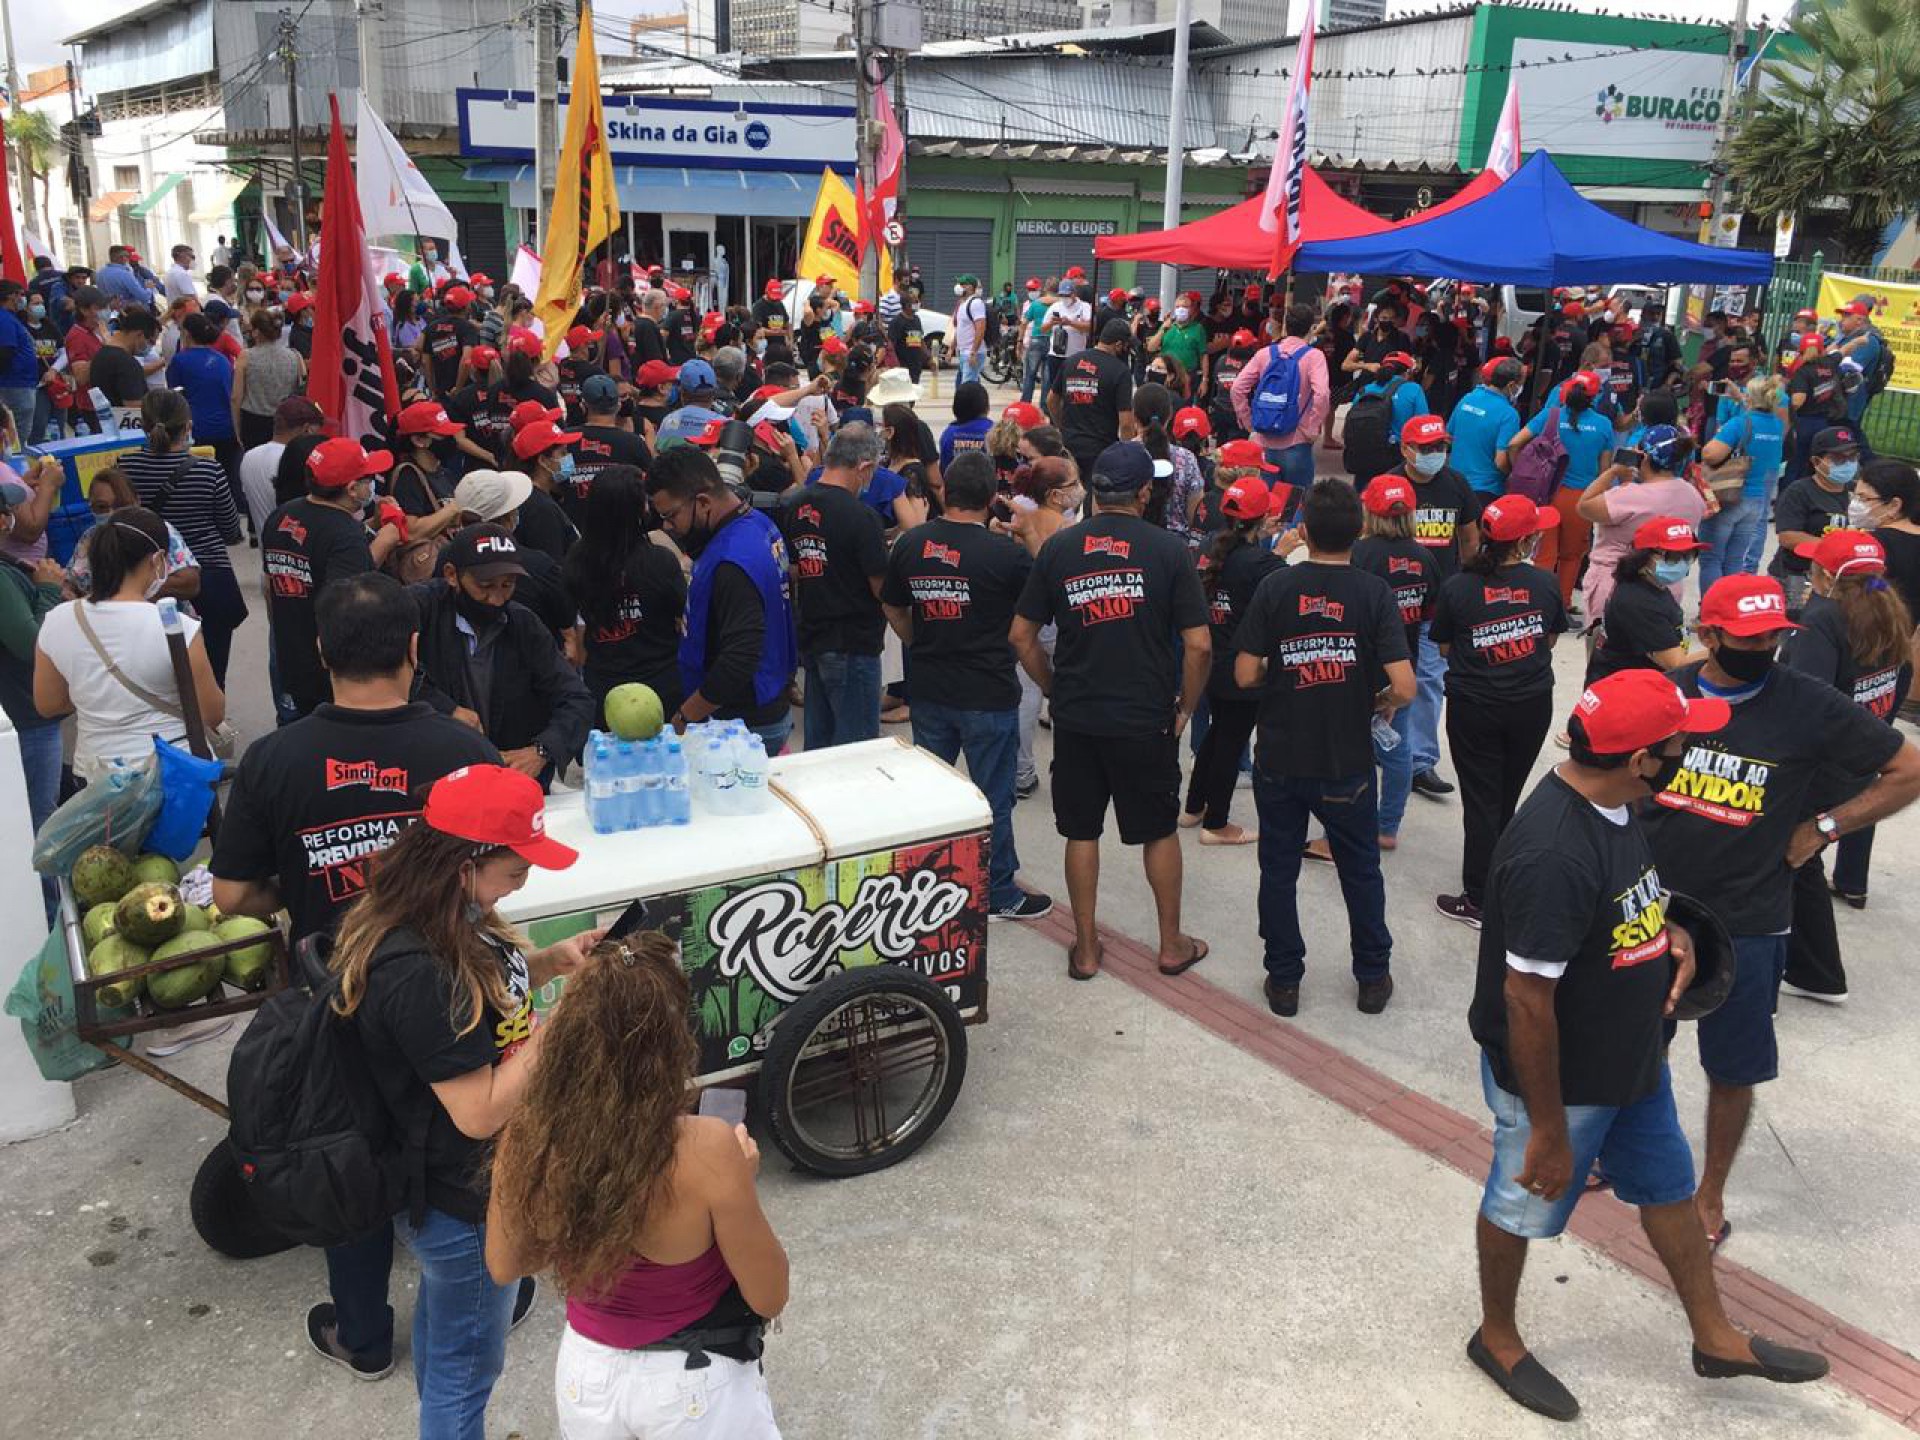 ENTIDADES de funcionário do município querem uma maior discussão sobre a reforma na Previdência (Foto: Divulgação / Frente de entidades sindicais)